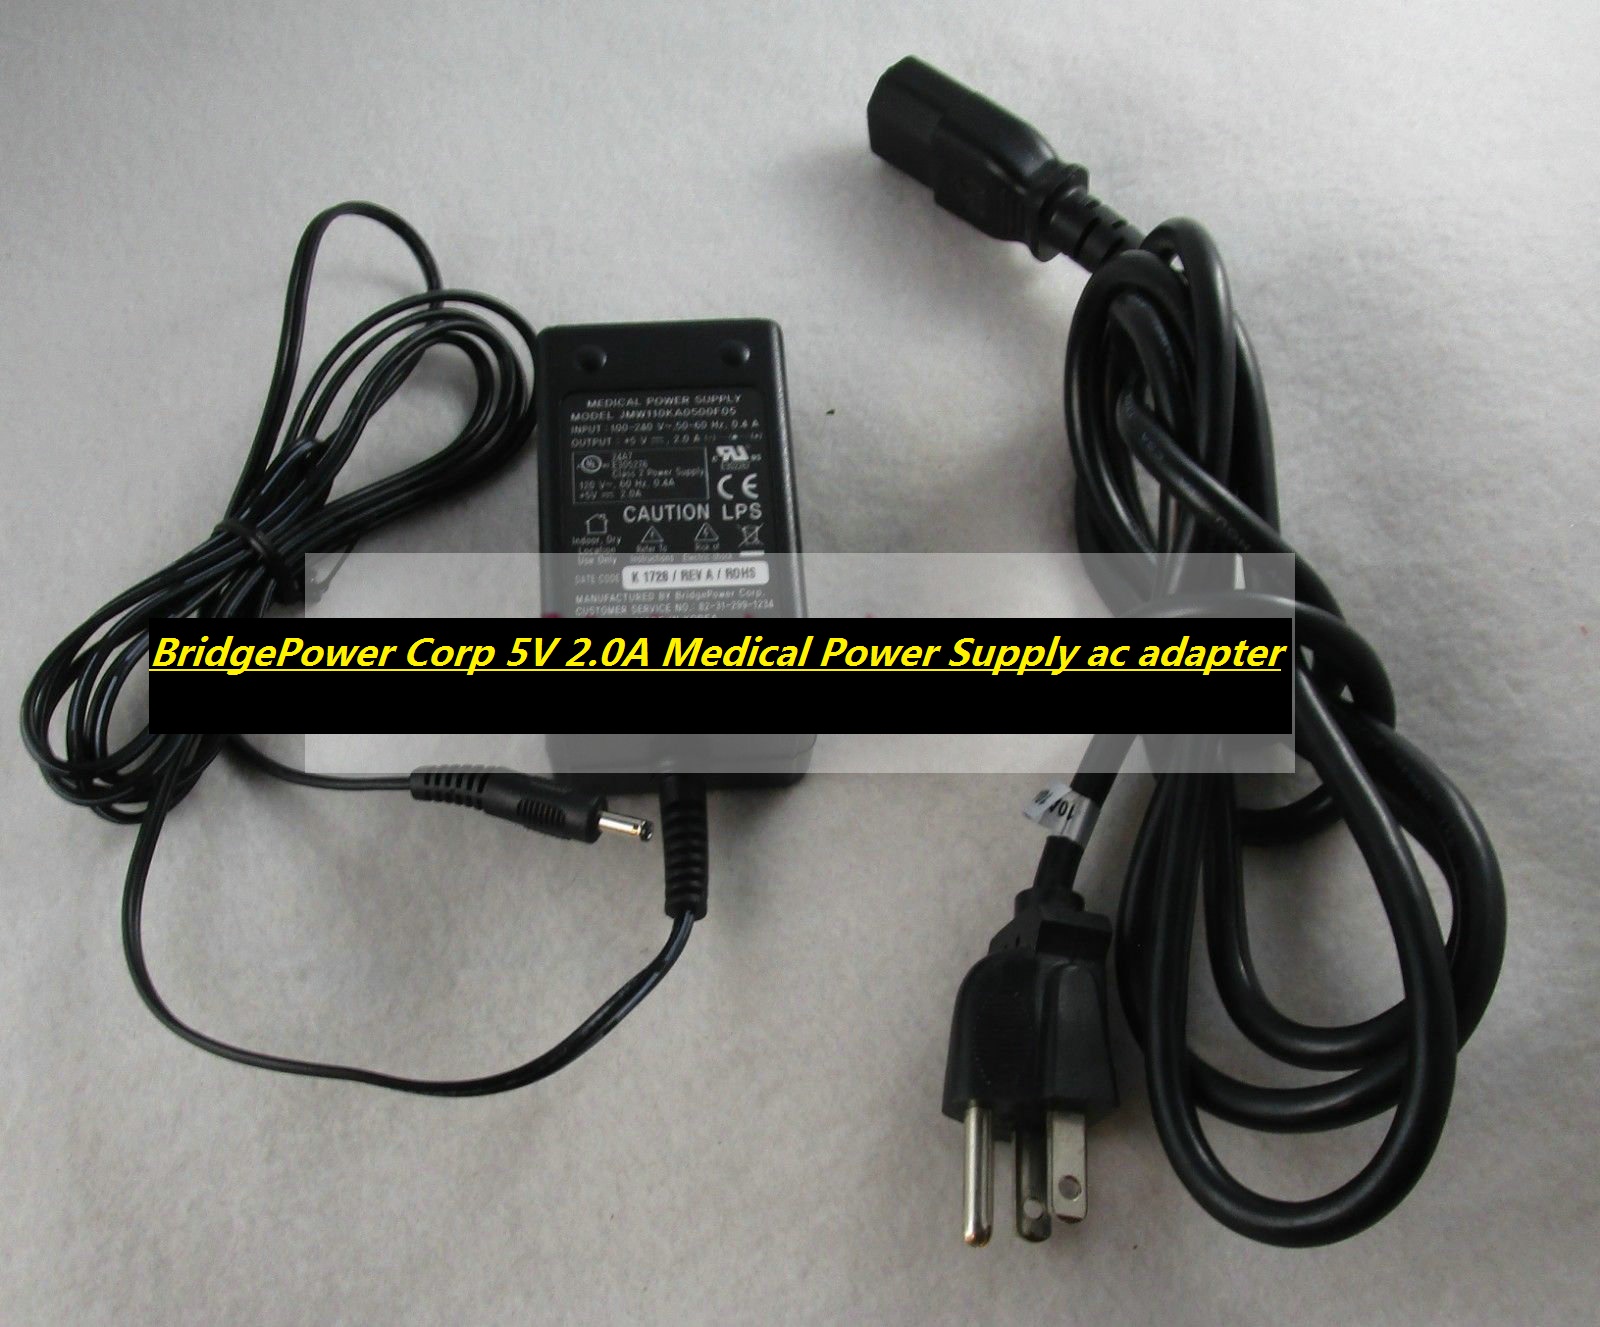 *Brand NEW* BridgePower Corp JMW110KA0500F05 Rev A 5V 2.0A Medical Power Supply ac adapter